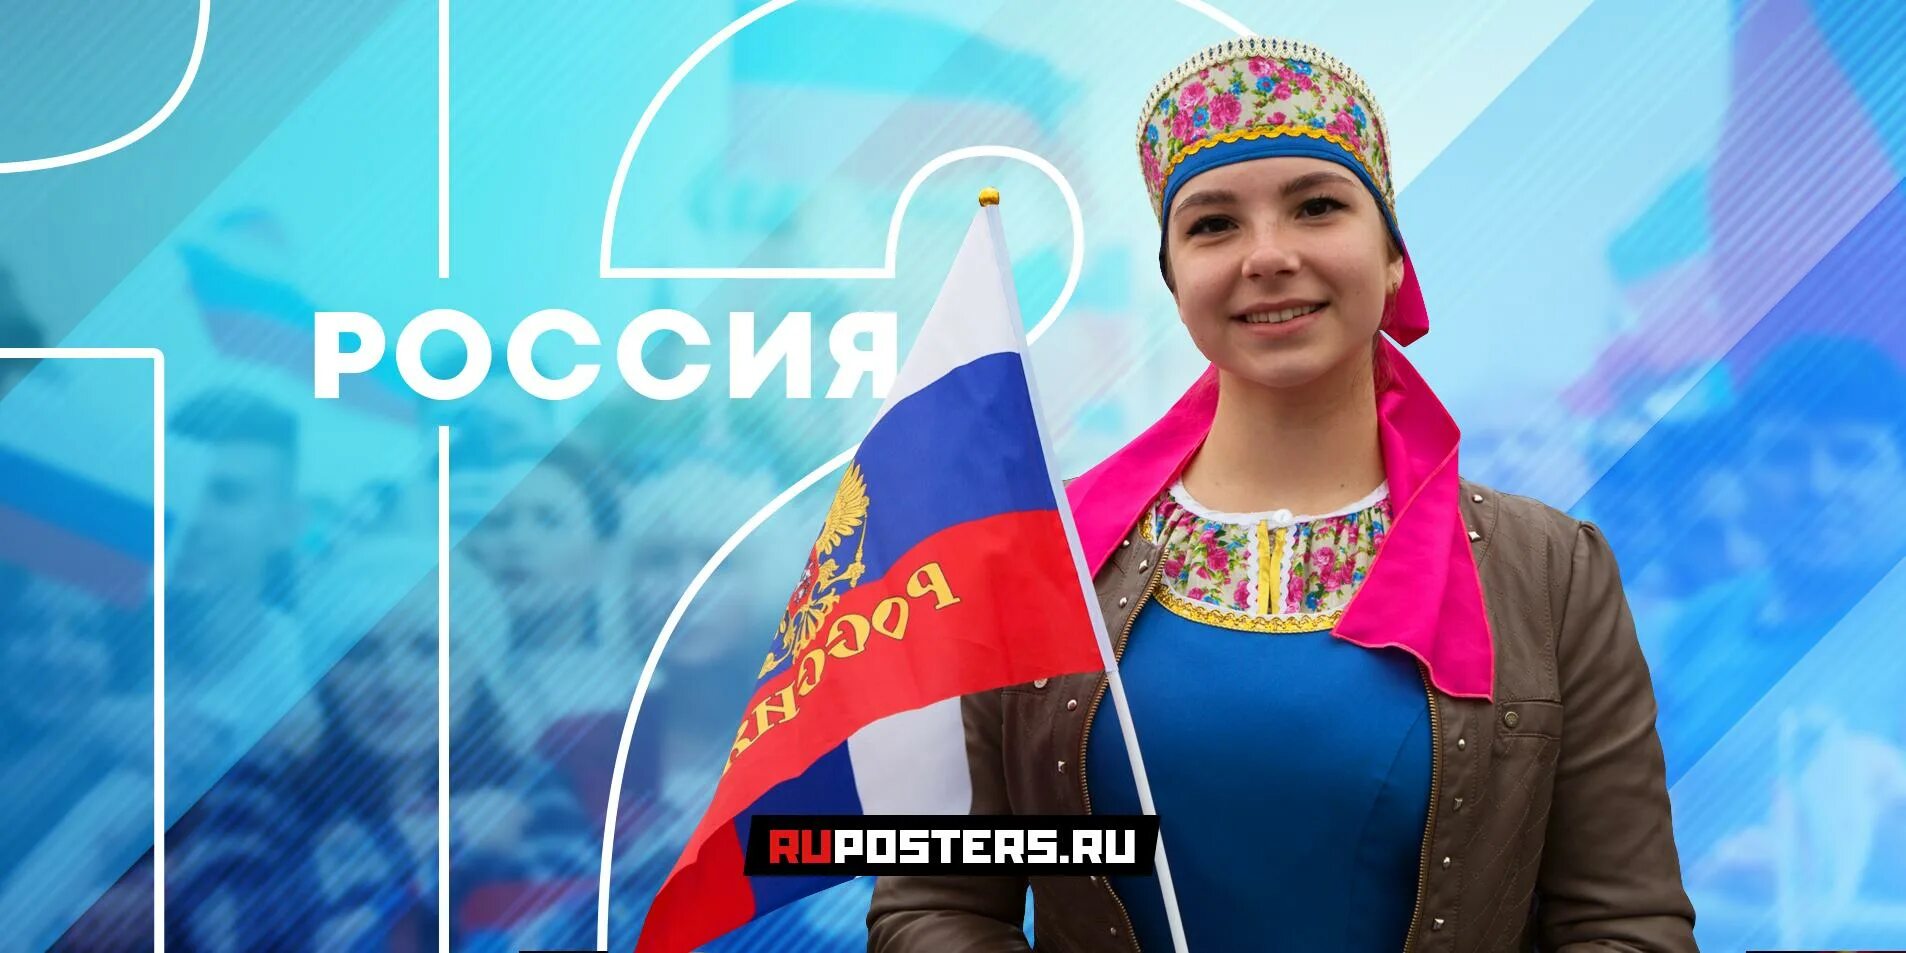 Флаг России 2020. Новый флаг РФ 2020. Новый флаг России 2016. День россии 2020 года